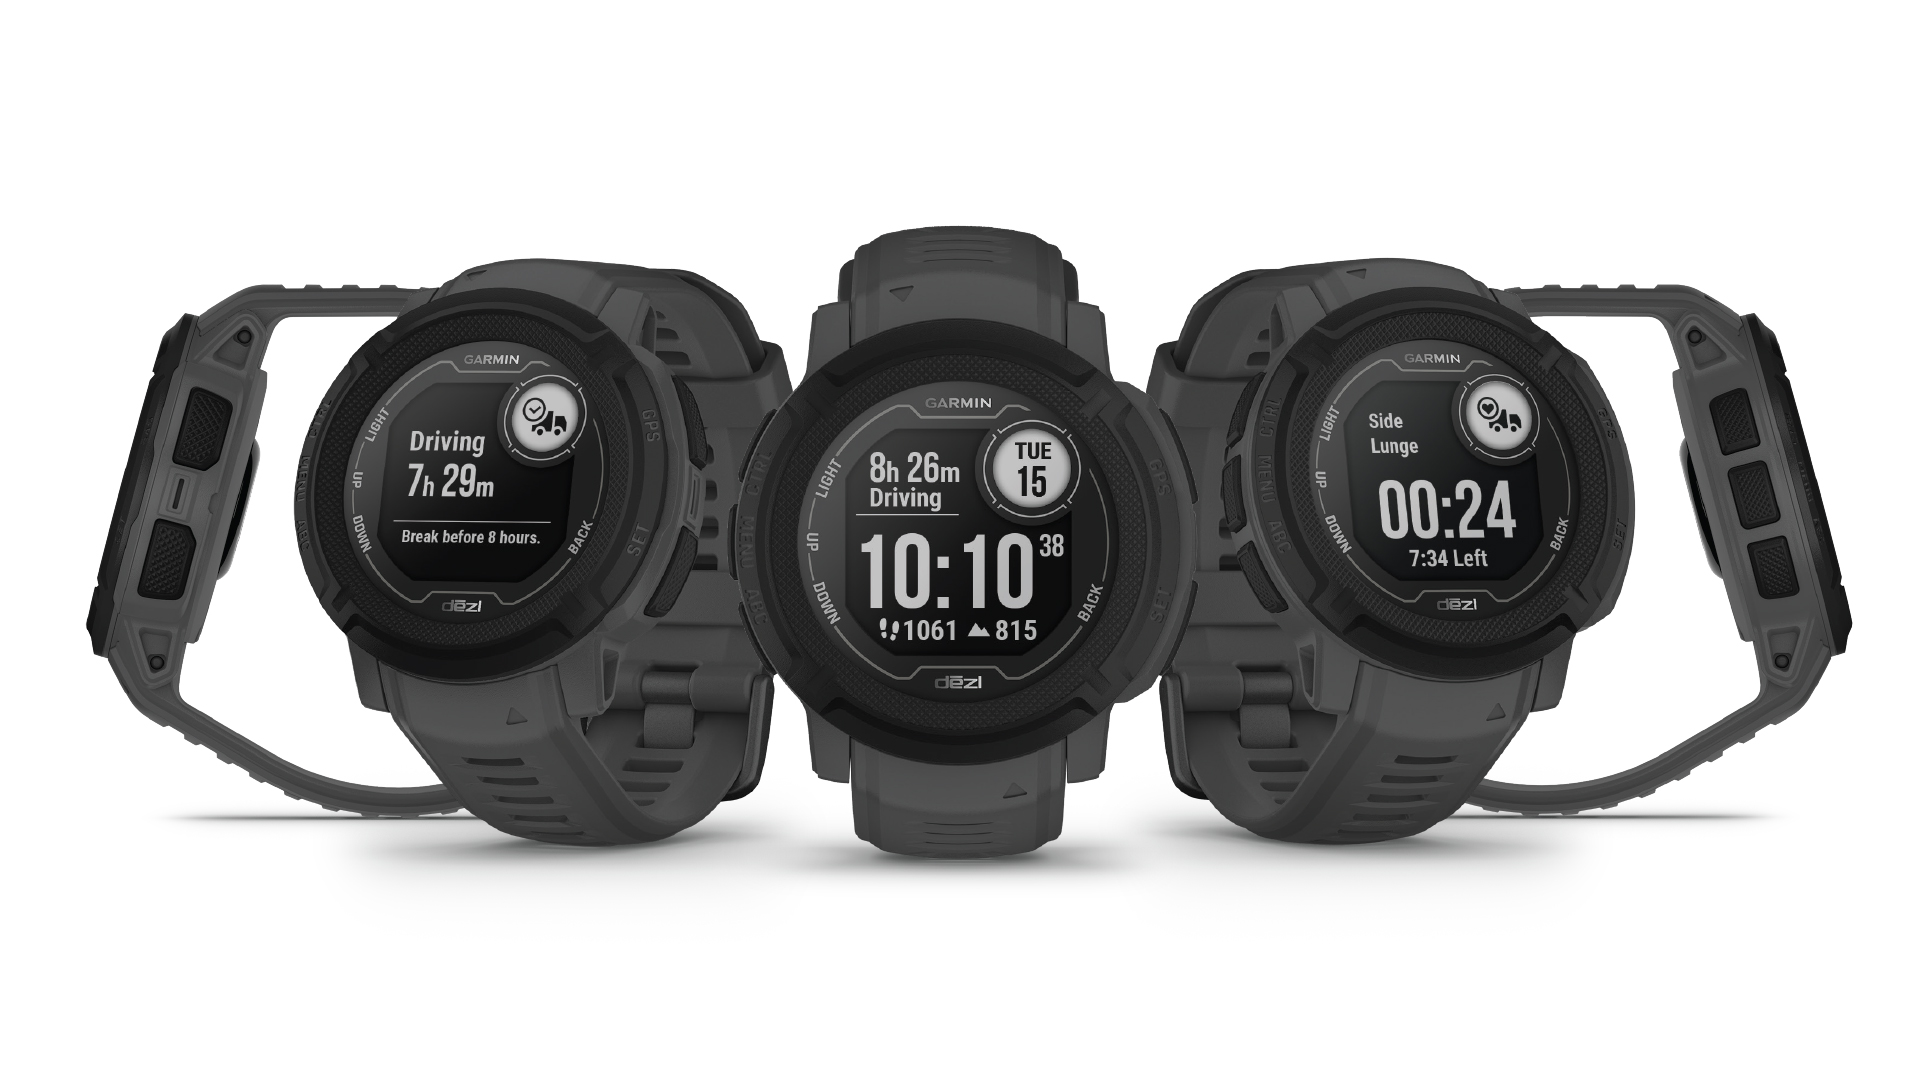 Jam tangan Garmin Instinct 2 Dezl Edition ditampilkan dari berbagai sudut